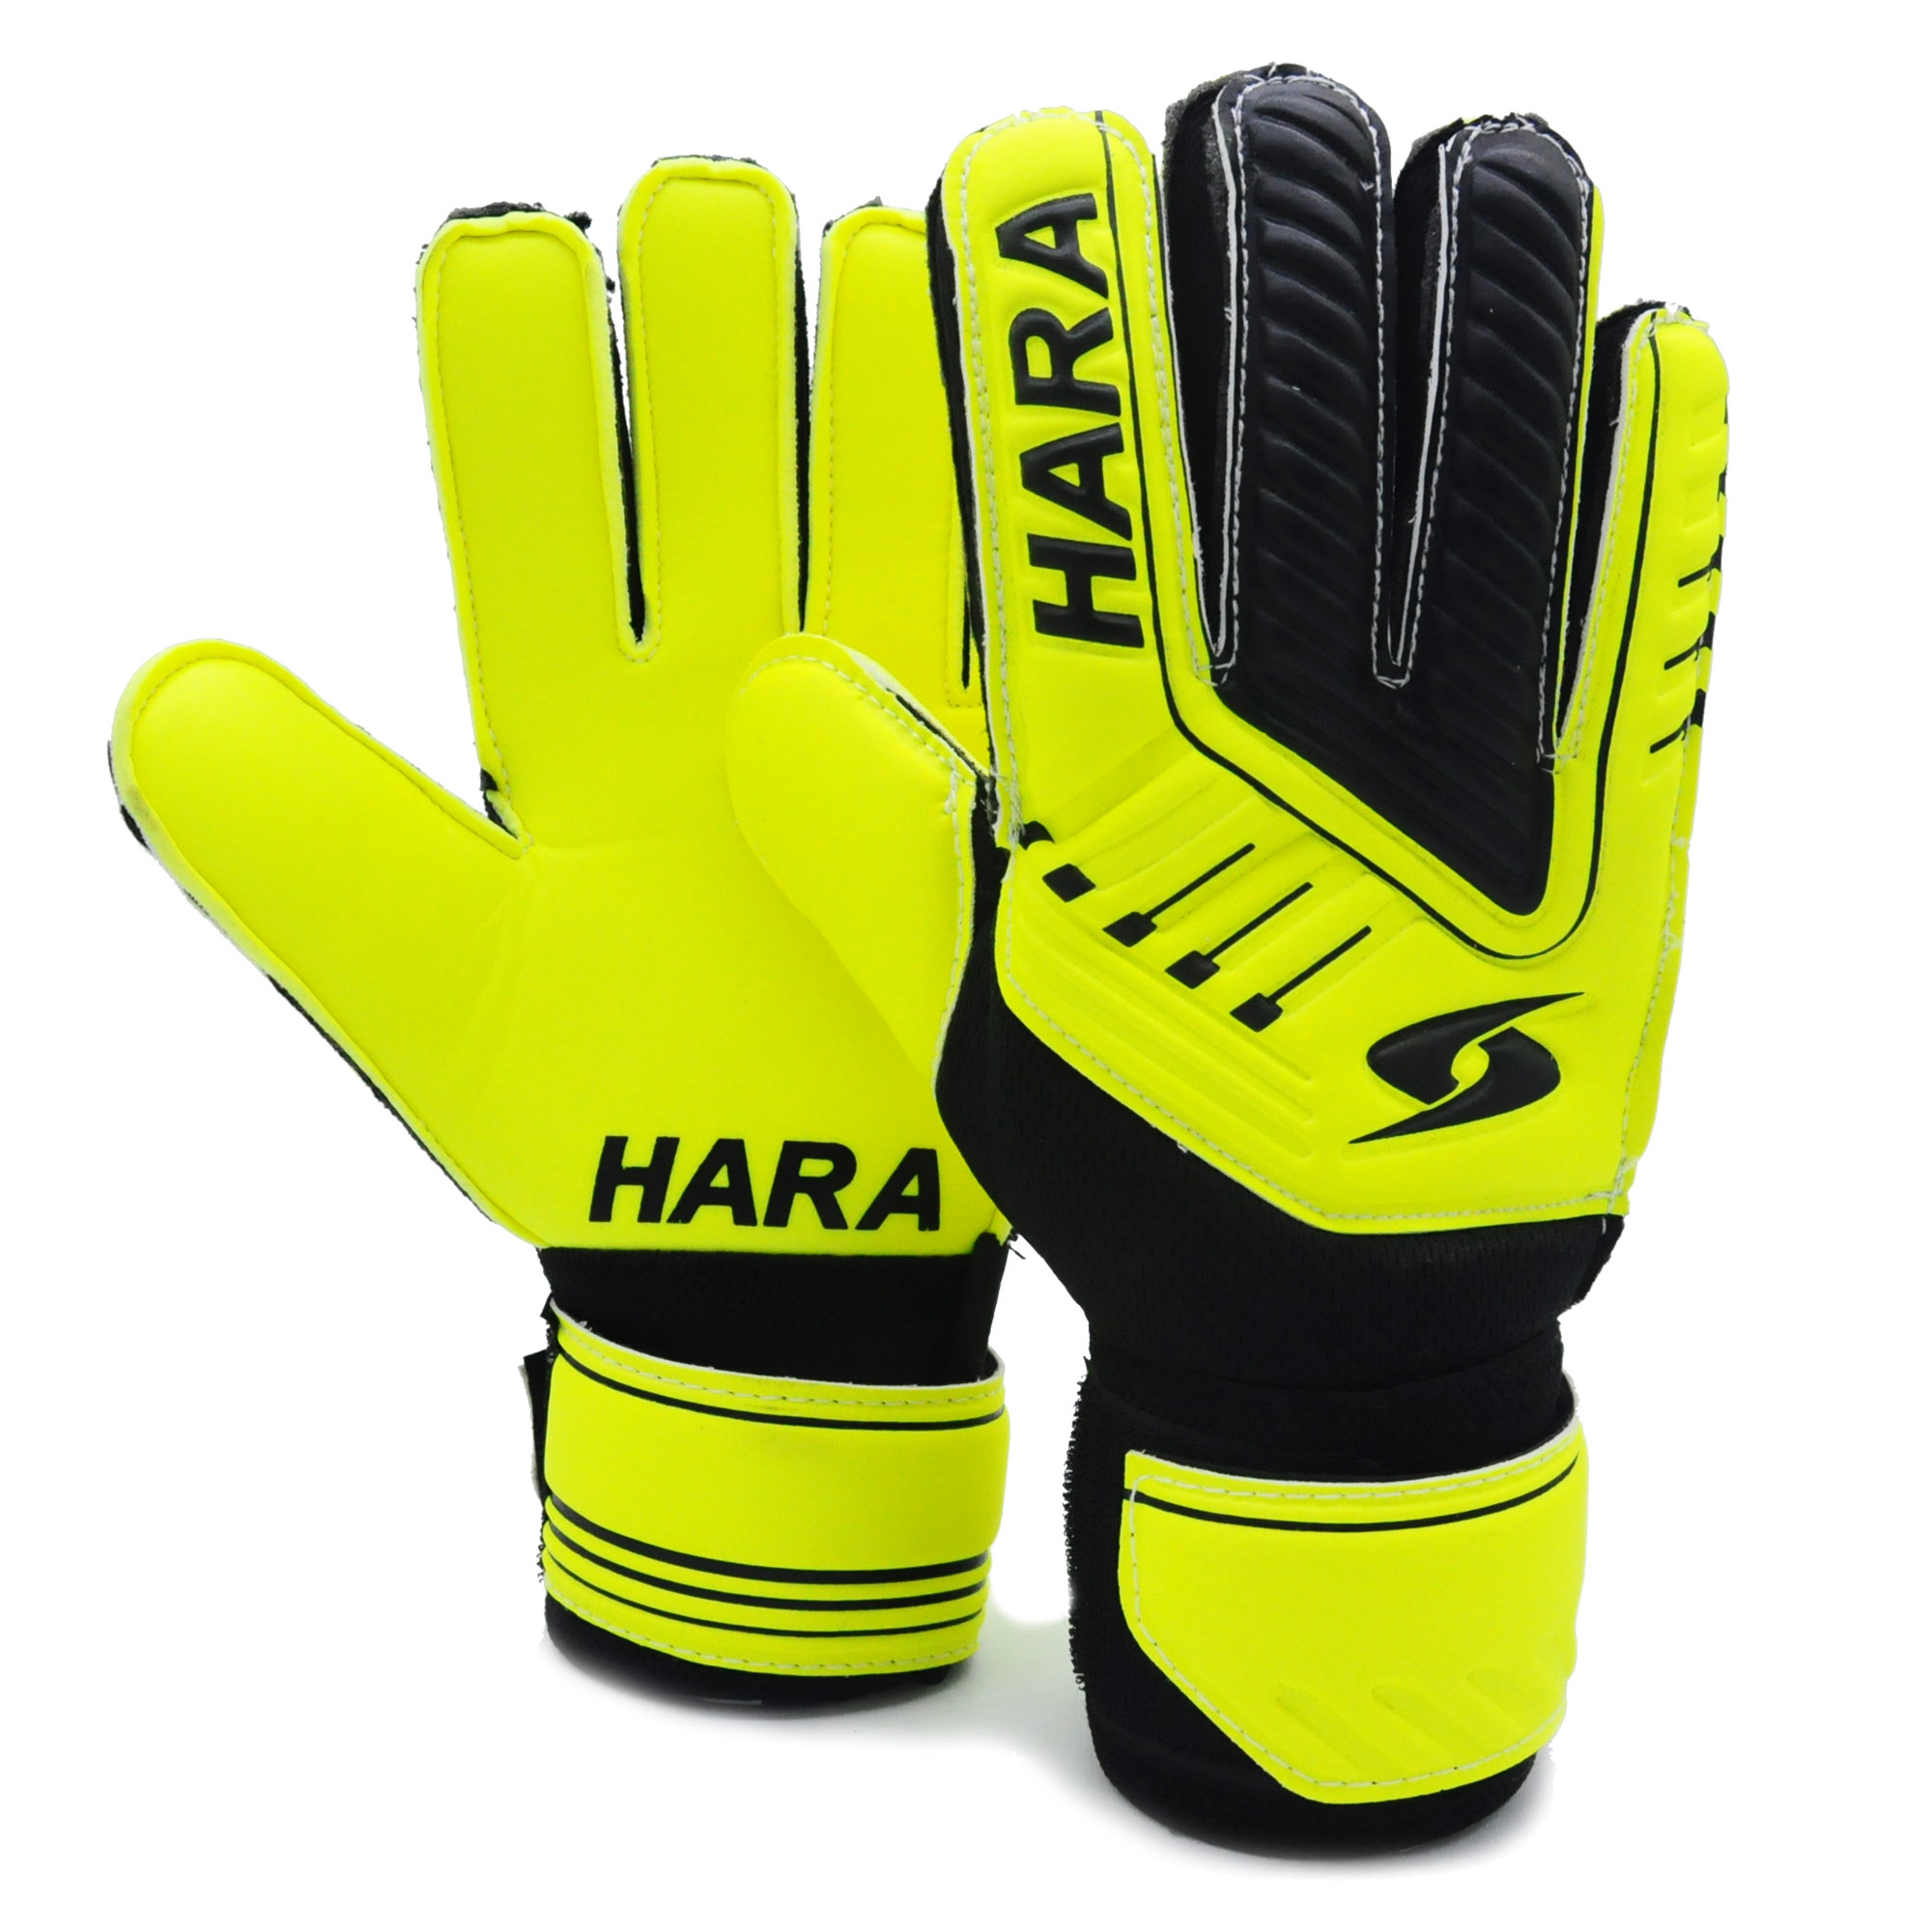 HARA Sports ถุงมือผู้รักษาประตู มีฟิงเกอร์เซฟ ถุงมือฟุตบอล สีเหลือง